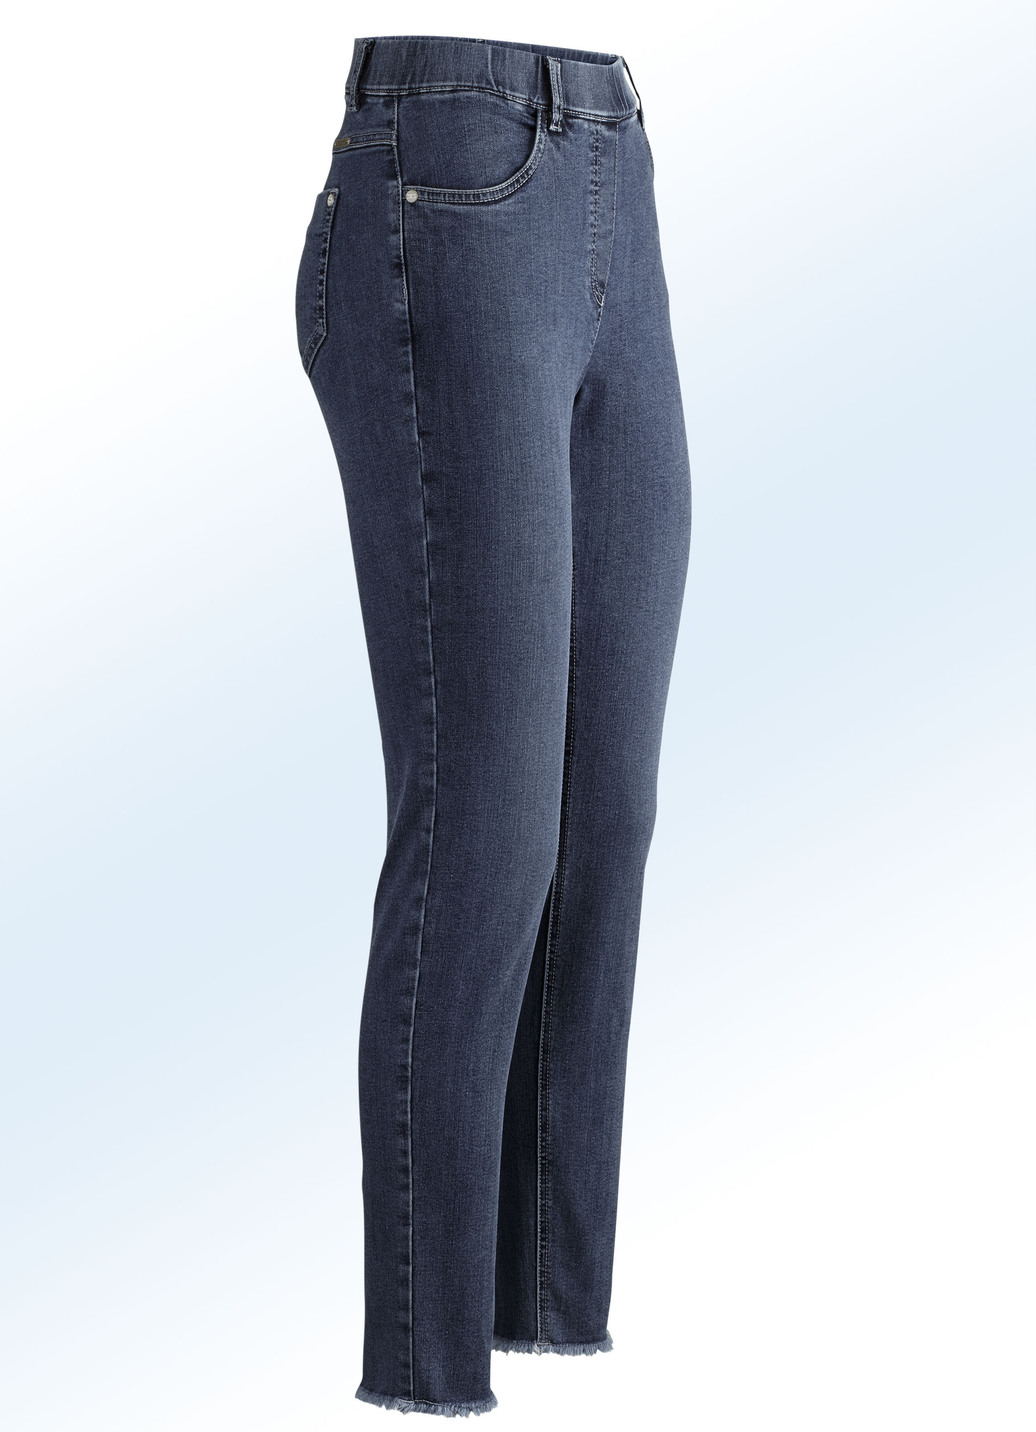 Magic-Jeans mit angesagtem Fransensaum, Dunkelblau, Größe 17 von ASCARI